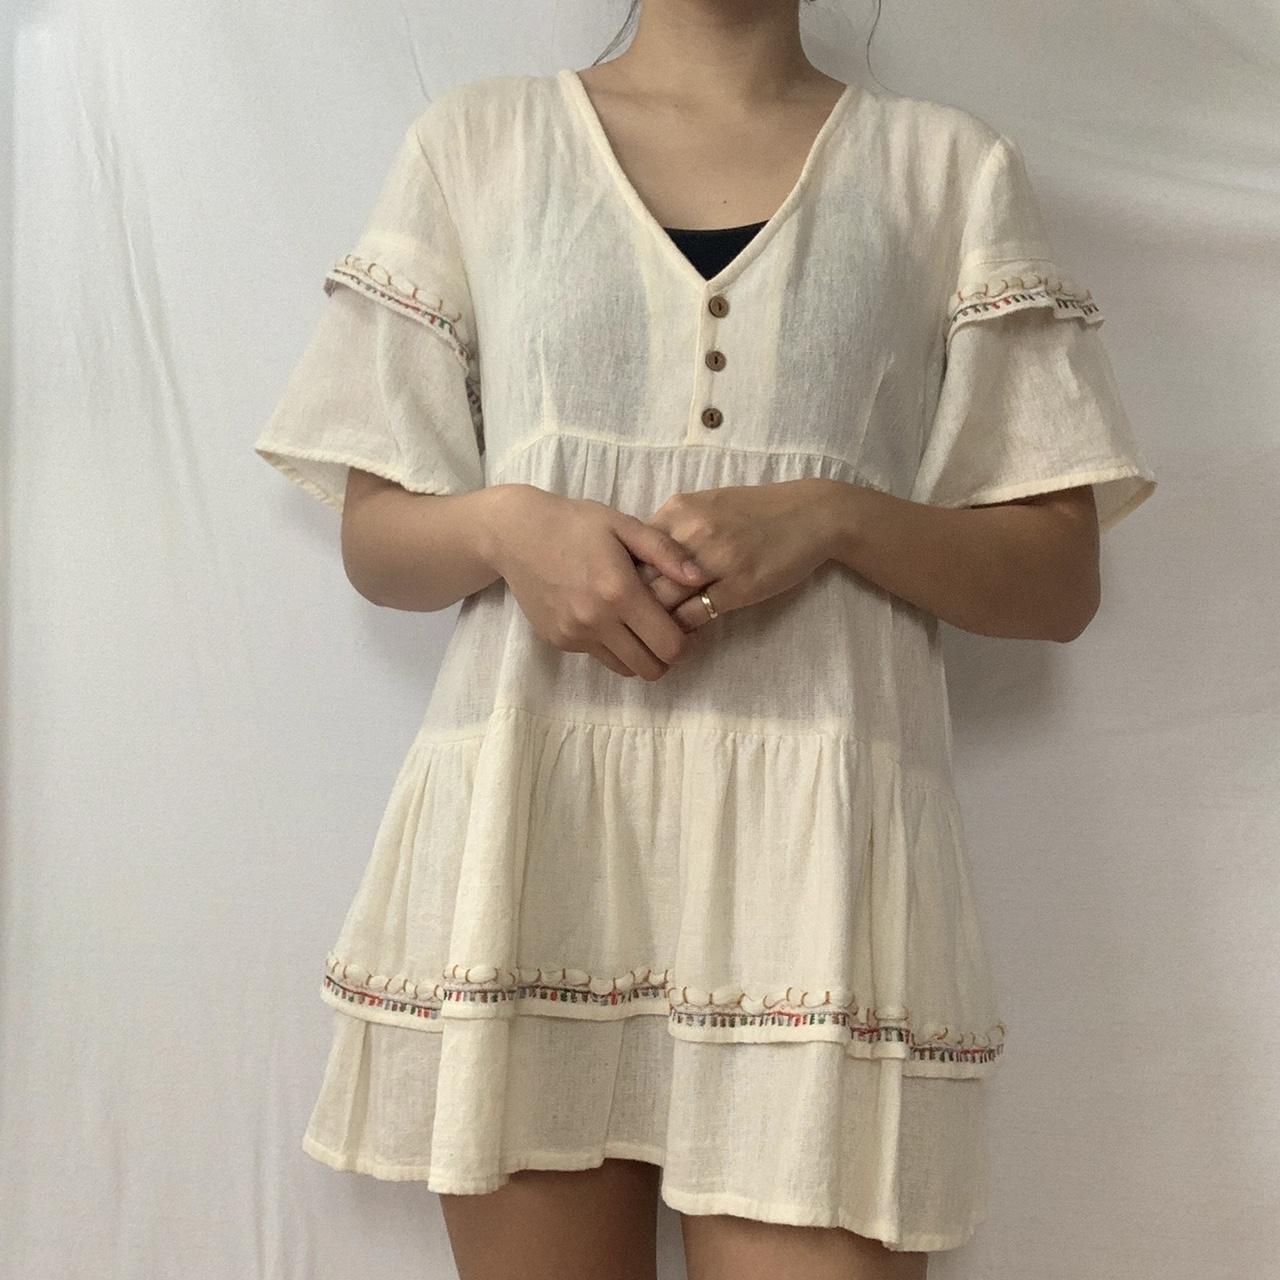 Raga Women's Cream Dress (3)